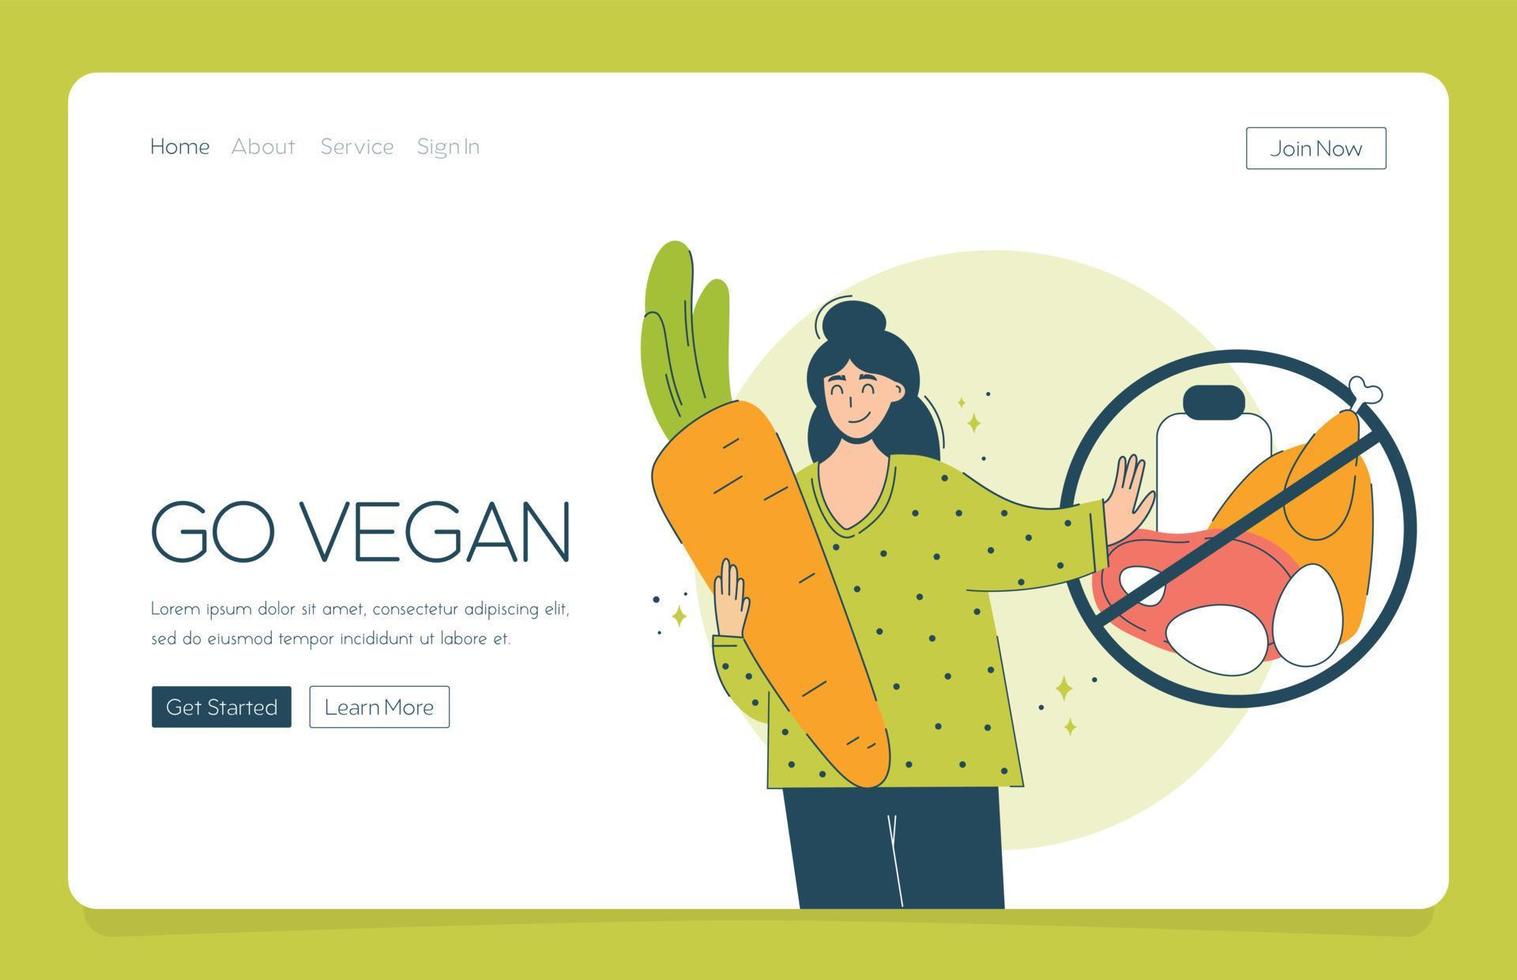 web-app-landung glückliche frau wählt veganismus und gemüse. Das Konzept eines vegetarischen Mädchens umfasst Karotten und lehnt Fleisch und Milchprodukte ab. vektor